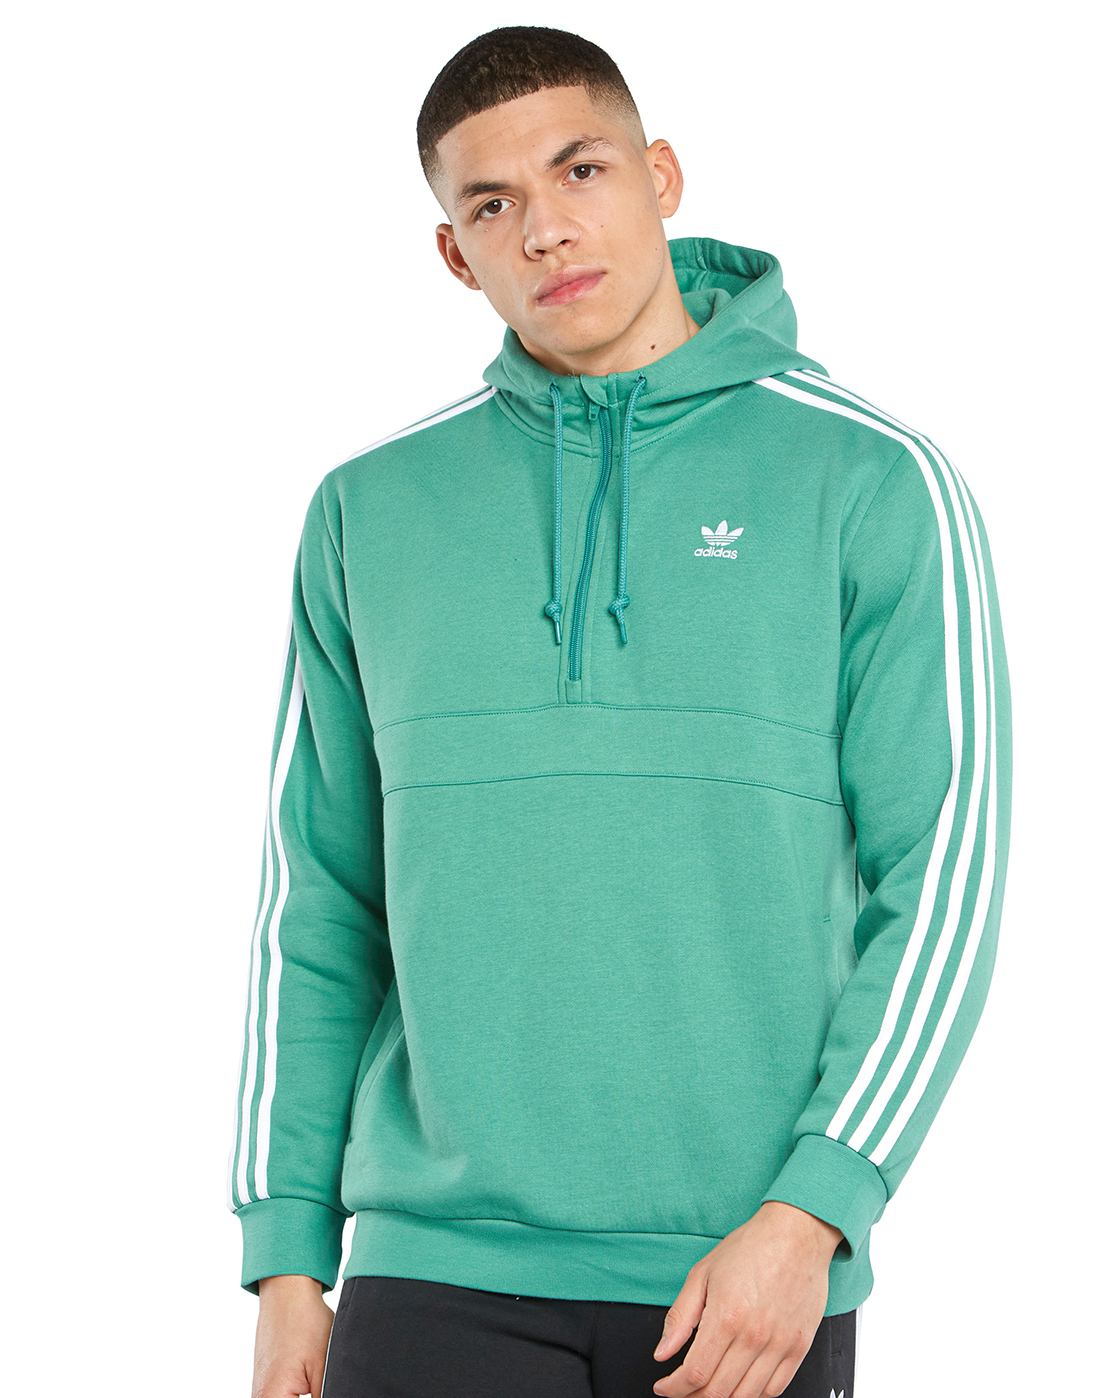 adidas originals sweatshirt with half zip in green